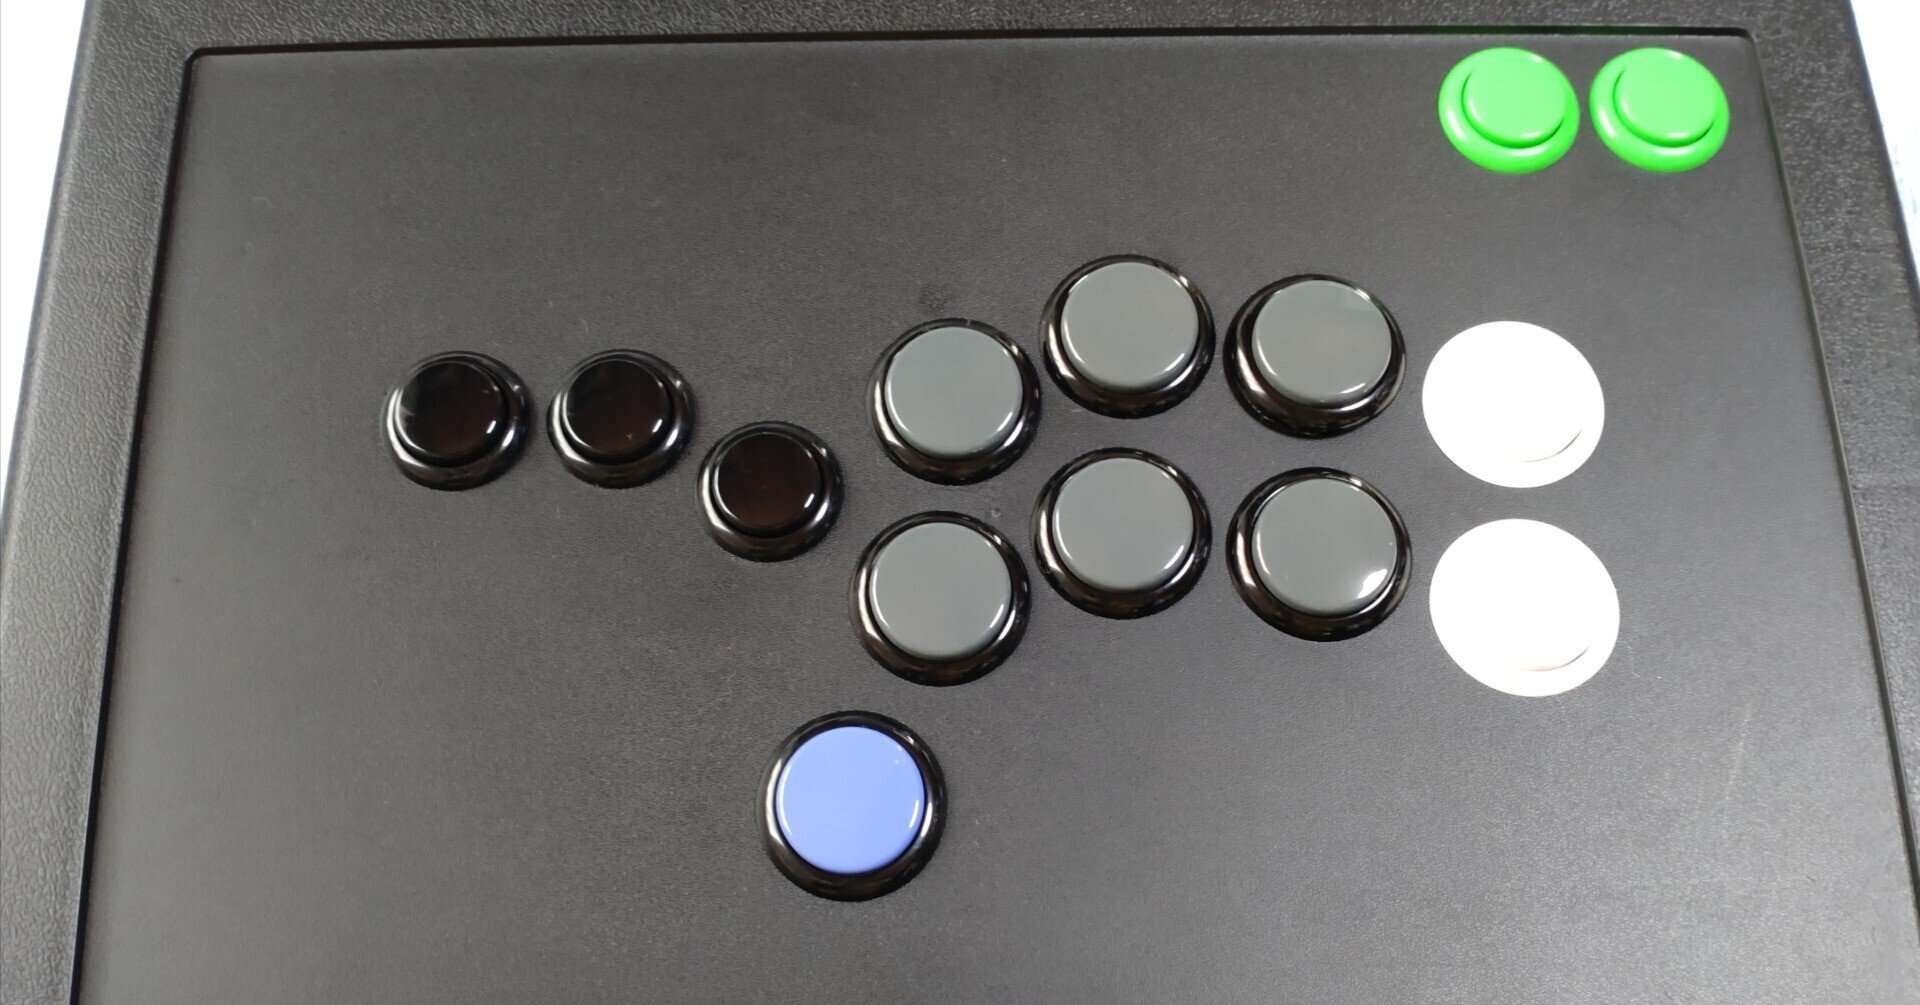 自作レバーレスコントローラー GP2040使用 11ボタン対応 - ゲーム 